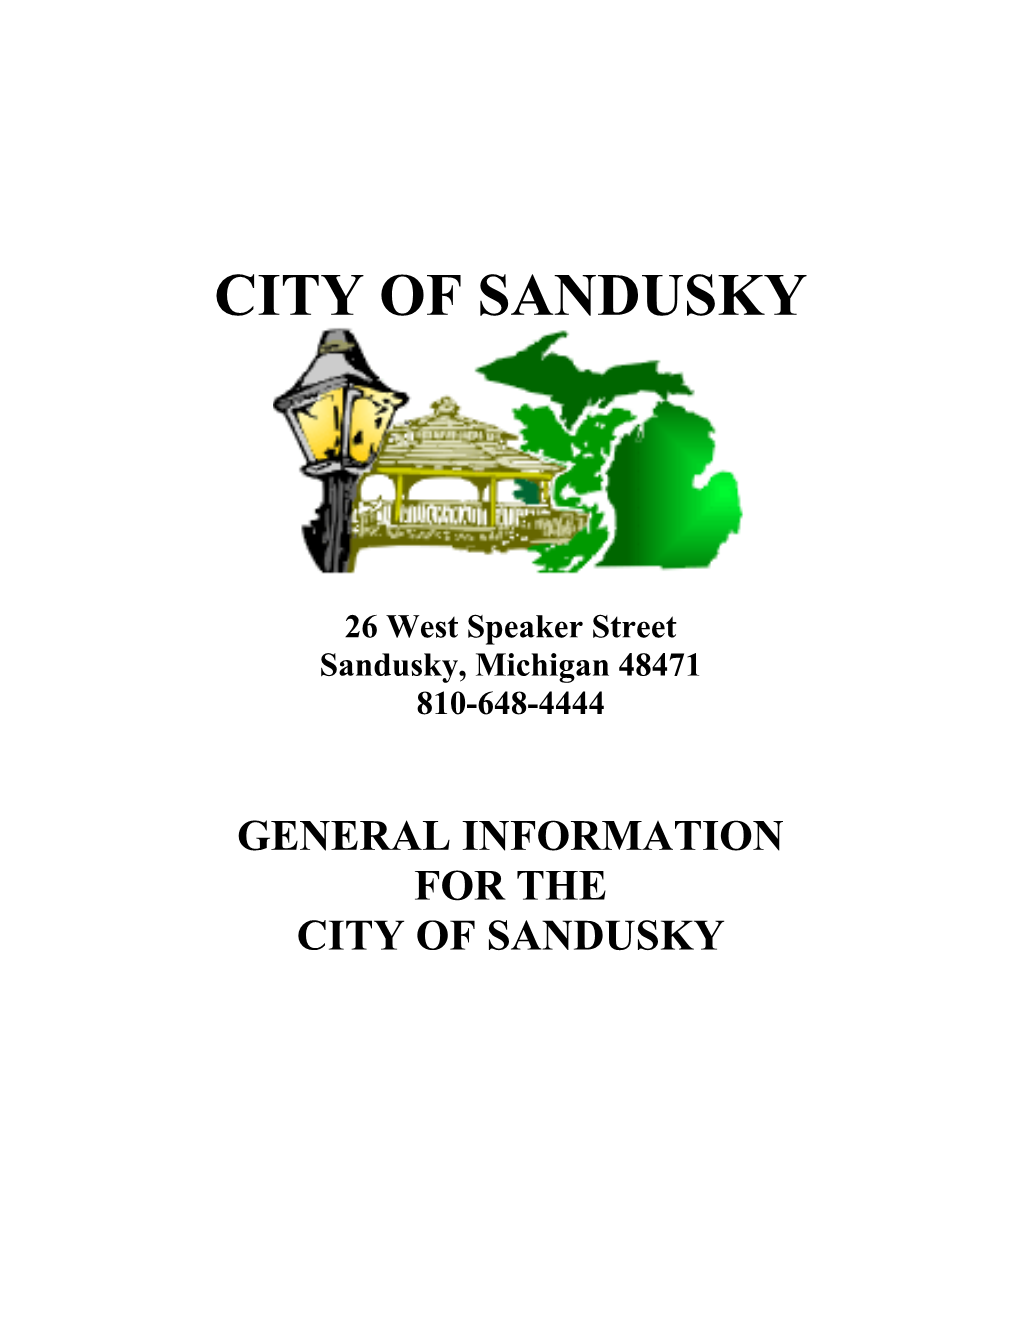 City of Sandusky